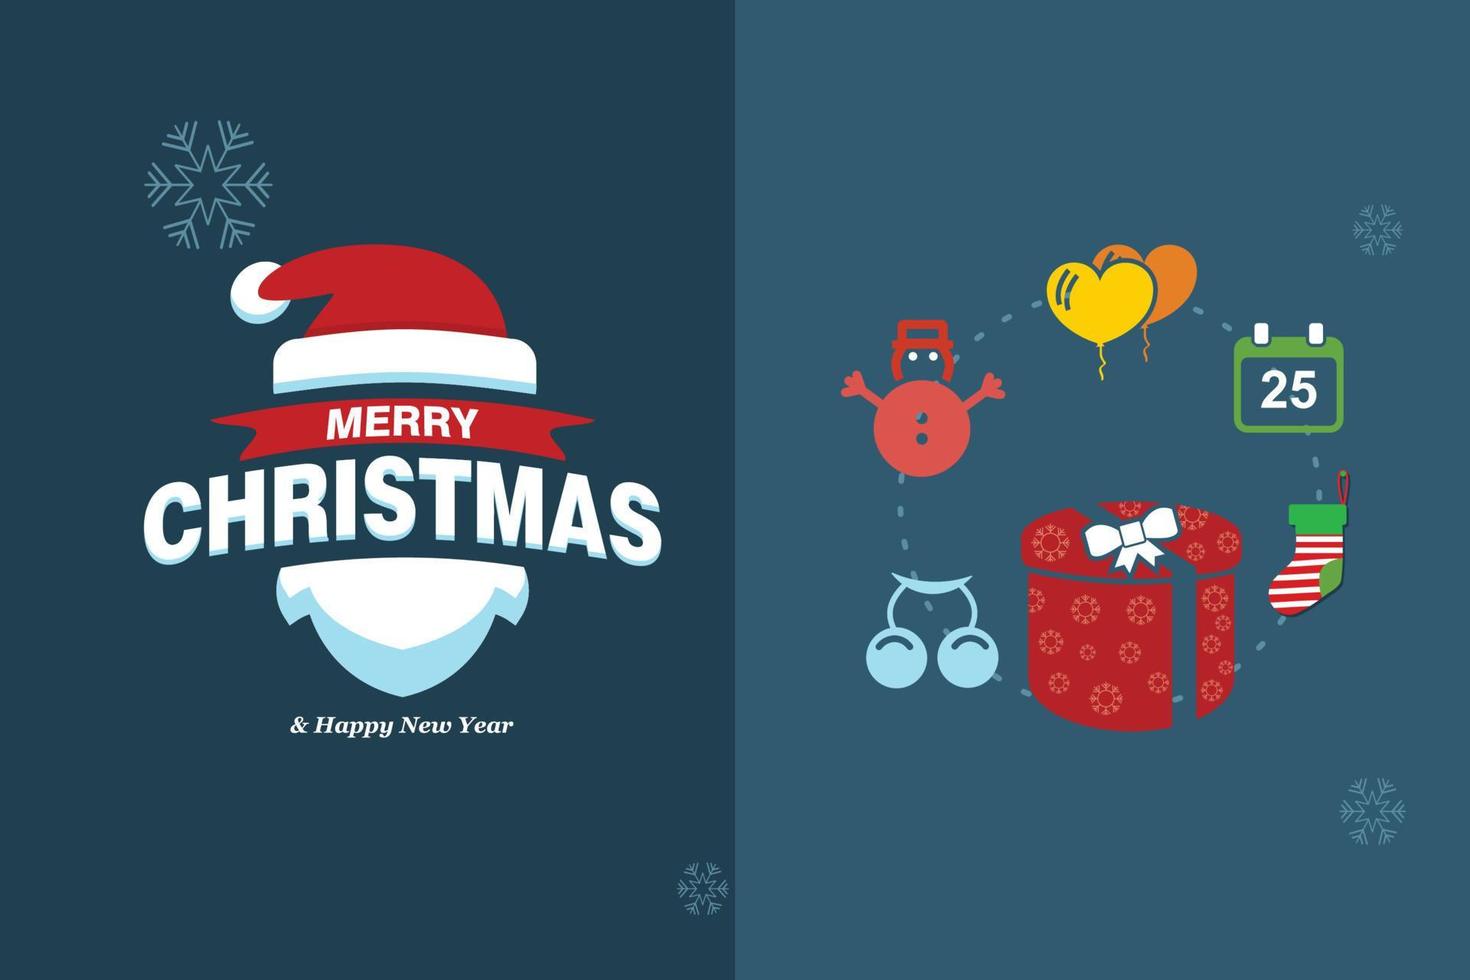 cartão de feliz natal com design elegante e vetor de tipografia